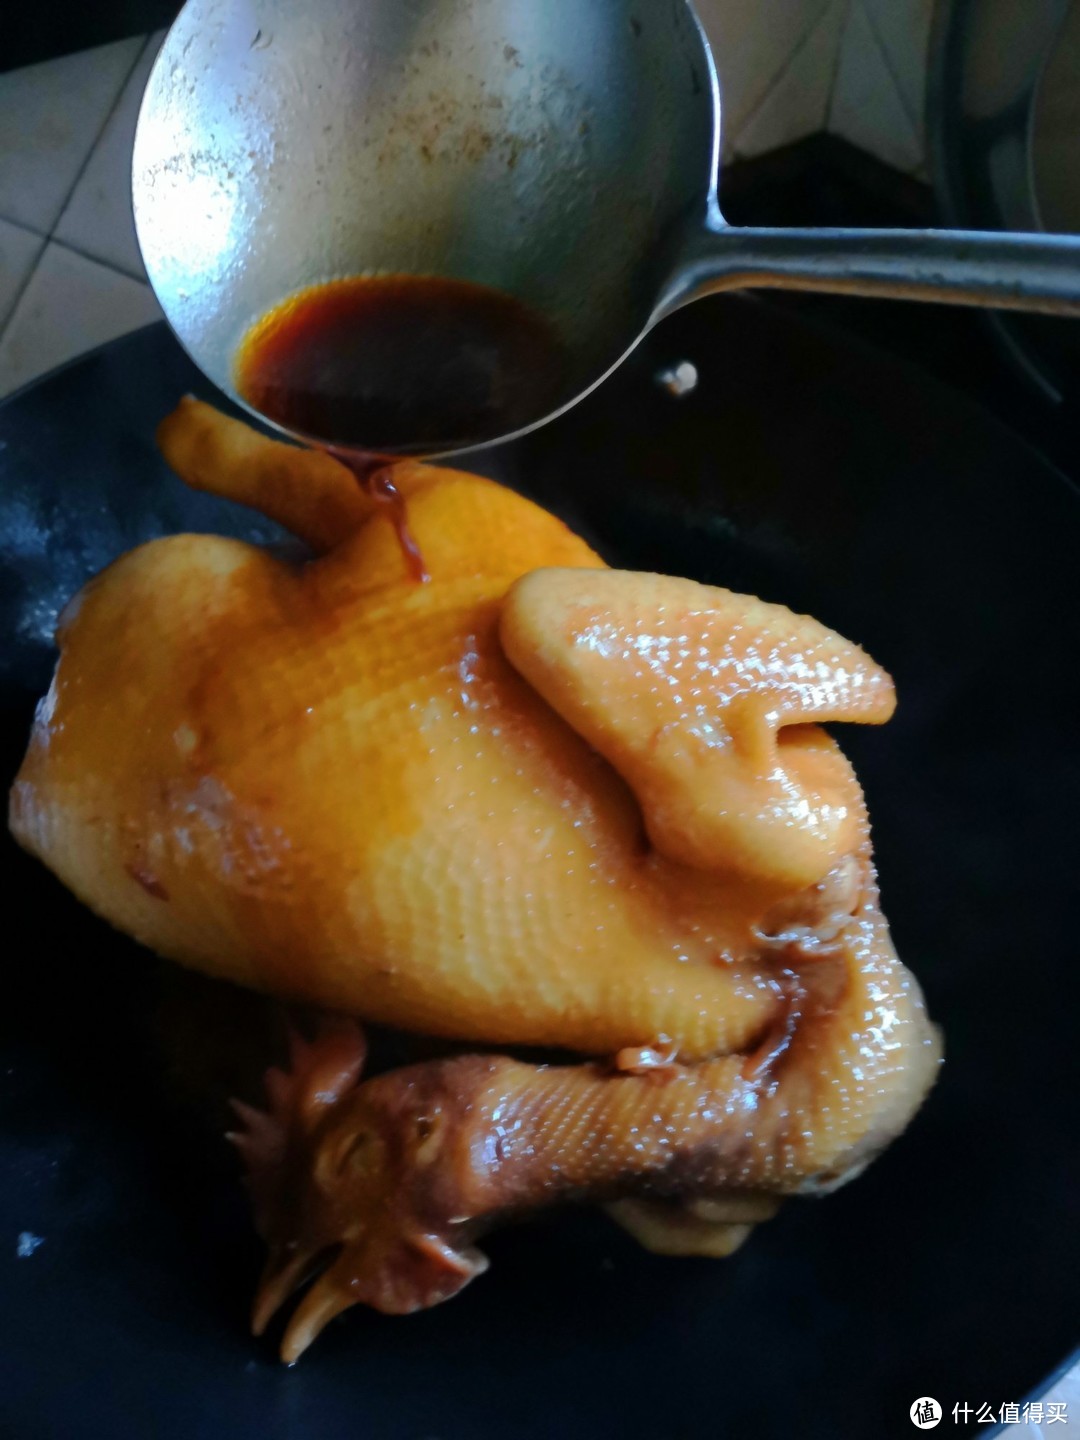 用炒勺把酱油淋在鸡身上，加入一碗清水，再加入一块红片糖，最后放一个小葱结进去，煮开后，没隔网，用鸡脚垫锅底，把鸡身挂起，防止鸡皮粘锅，盖上锅盖小火焖十分钟。